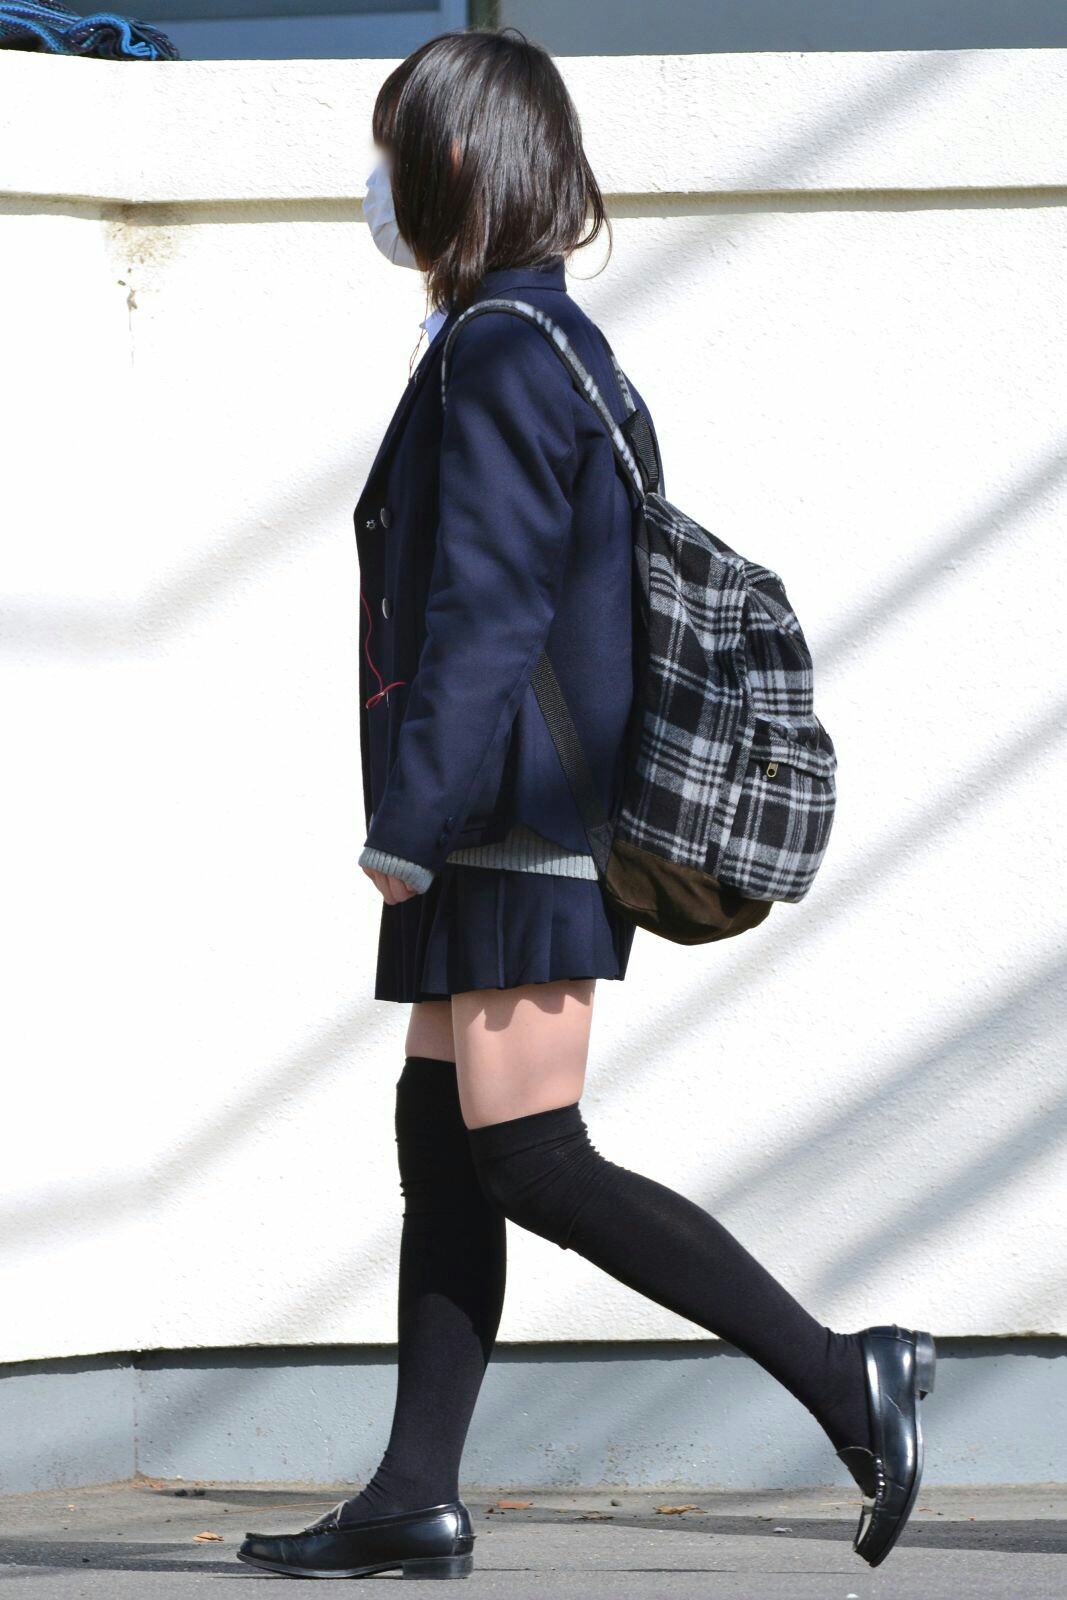 【JKニーソックス盗撮エロ画像】女子校生が黒ニーソを履いて強調されてる太ももがスケベすぎるｗｗｗ-17